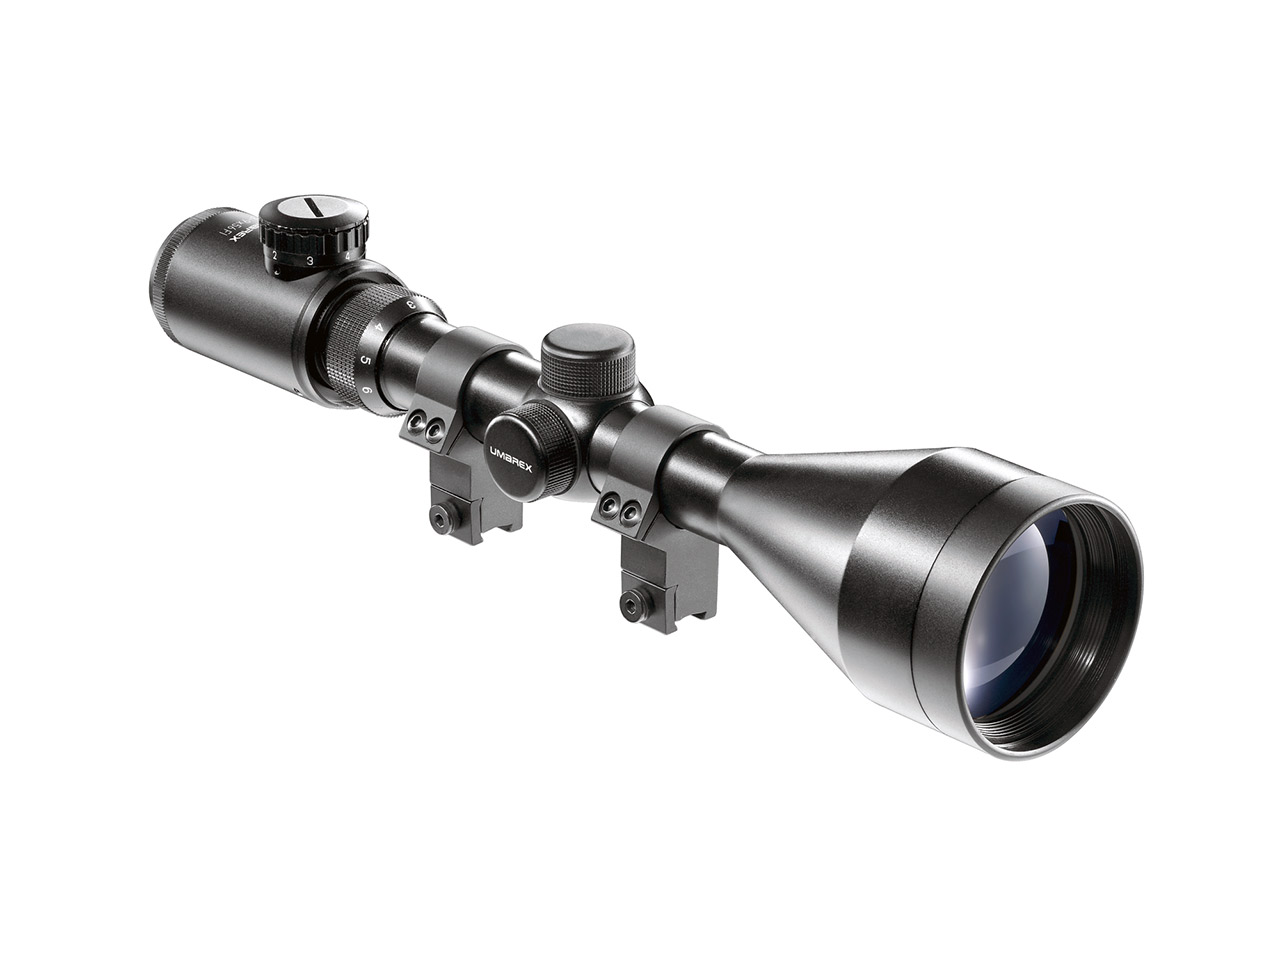 Zielfernrohr Umarex RS 3-9x56 FI Duplex Absehen beleuchtet inklusive Ringmontagen für 11 mm Prismenschiene